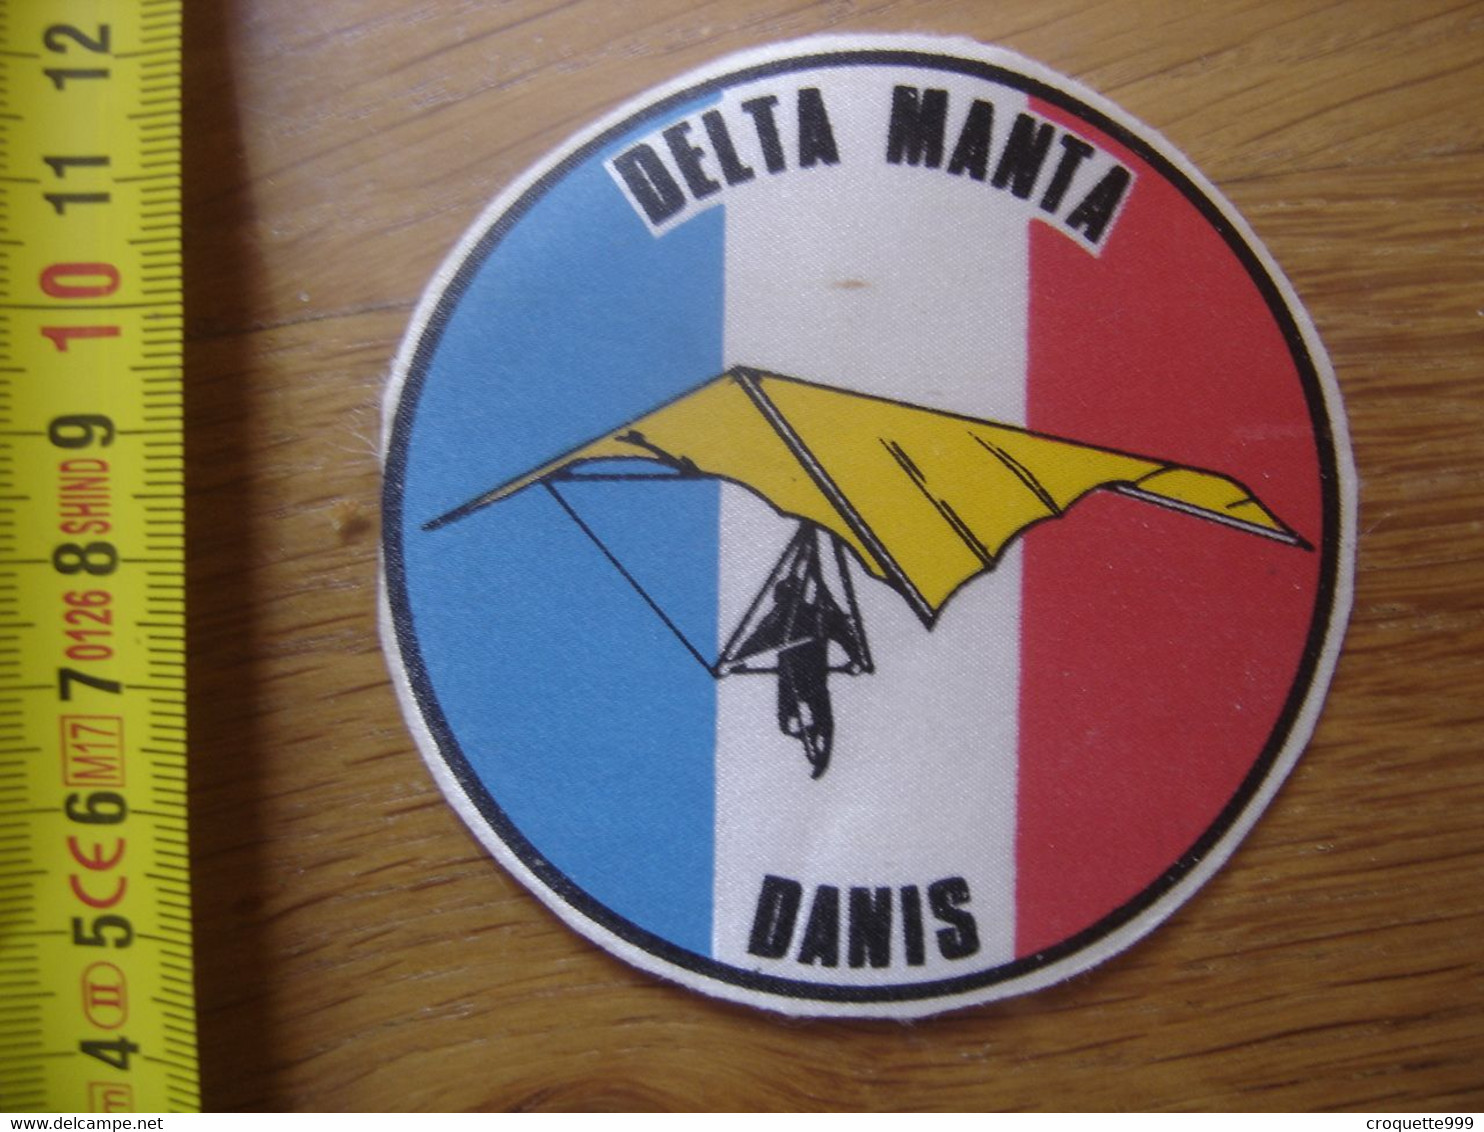 Ecusson Patch DELTA MANTA DANIS Bleu Blanc Rouge - Parachutespringen